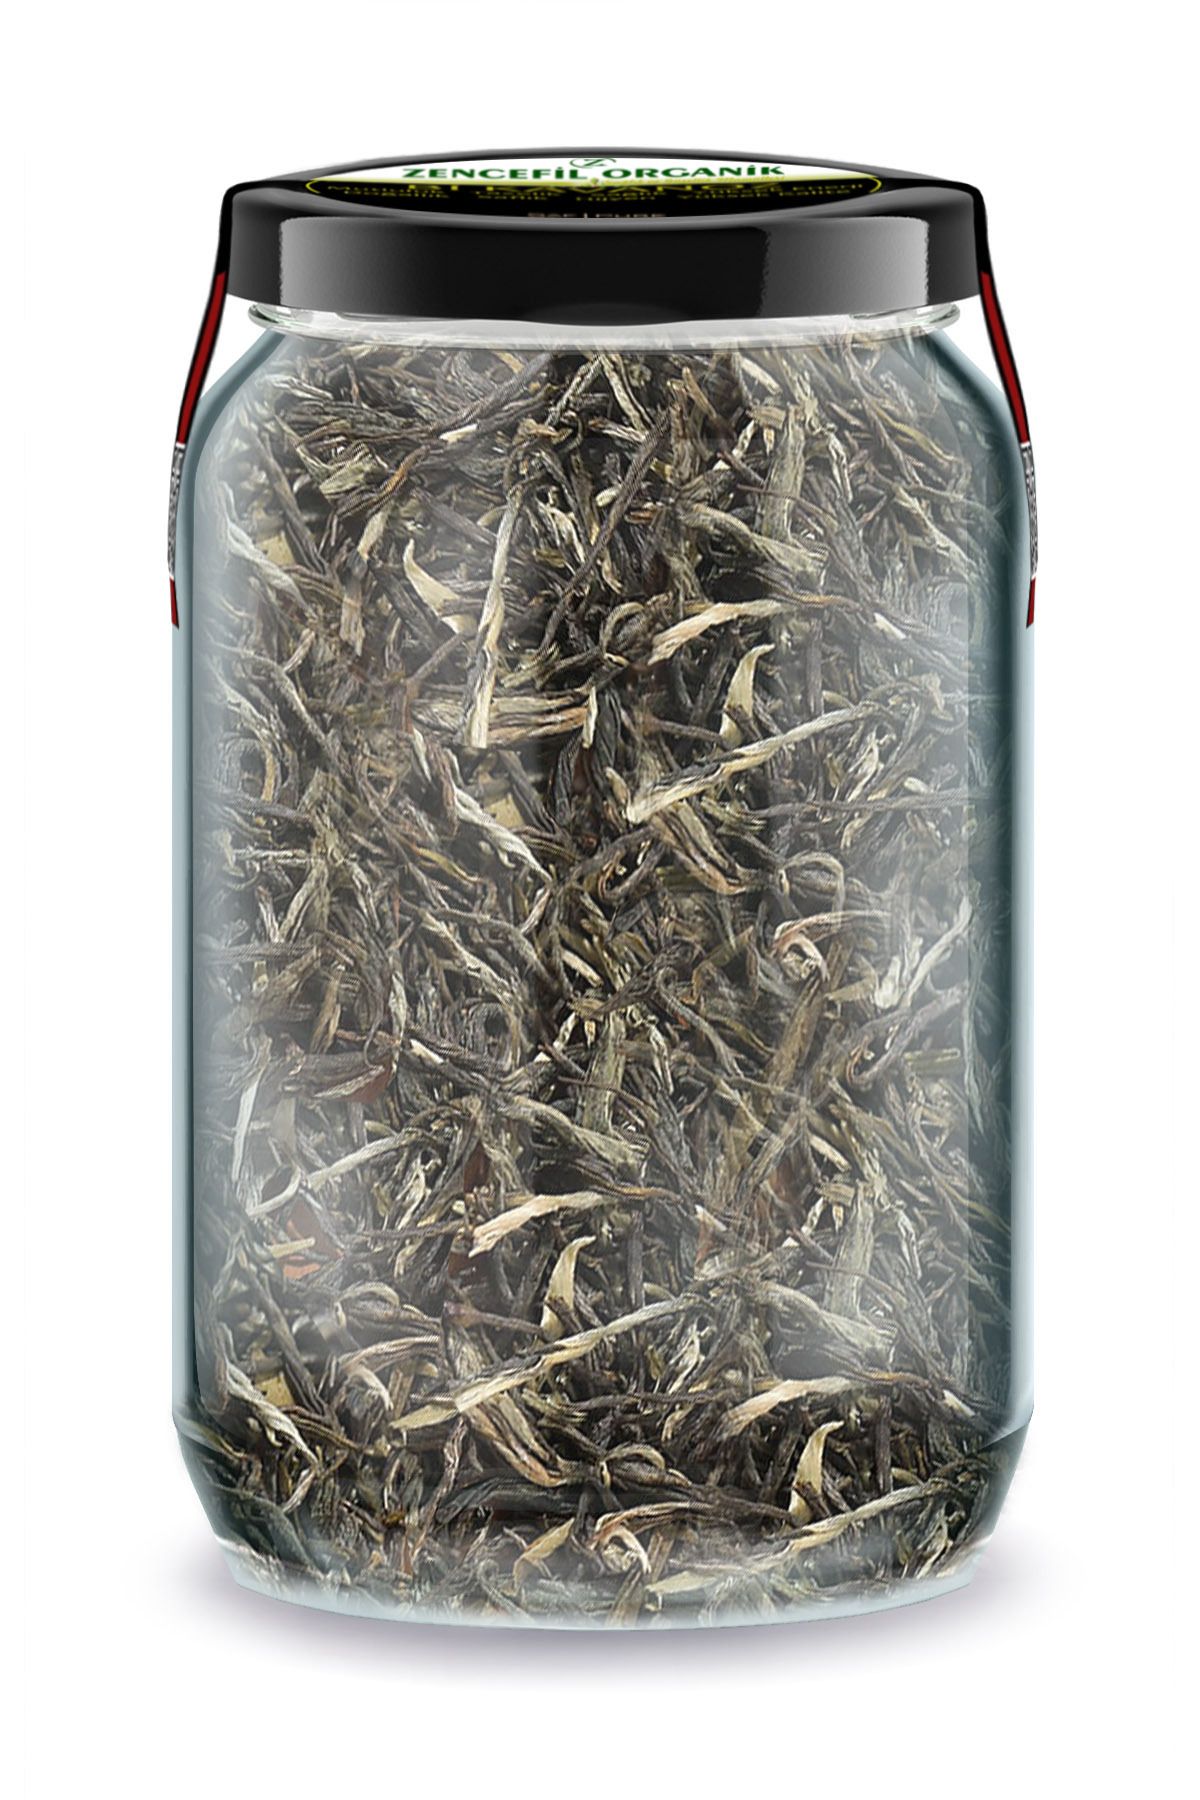 Zencefil Organik Beyaz Çay Bi Kavanoz 660 cc. Cam Kavanozda Katkısız Beyazçay Pure White Tea